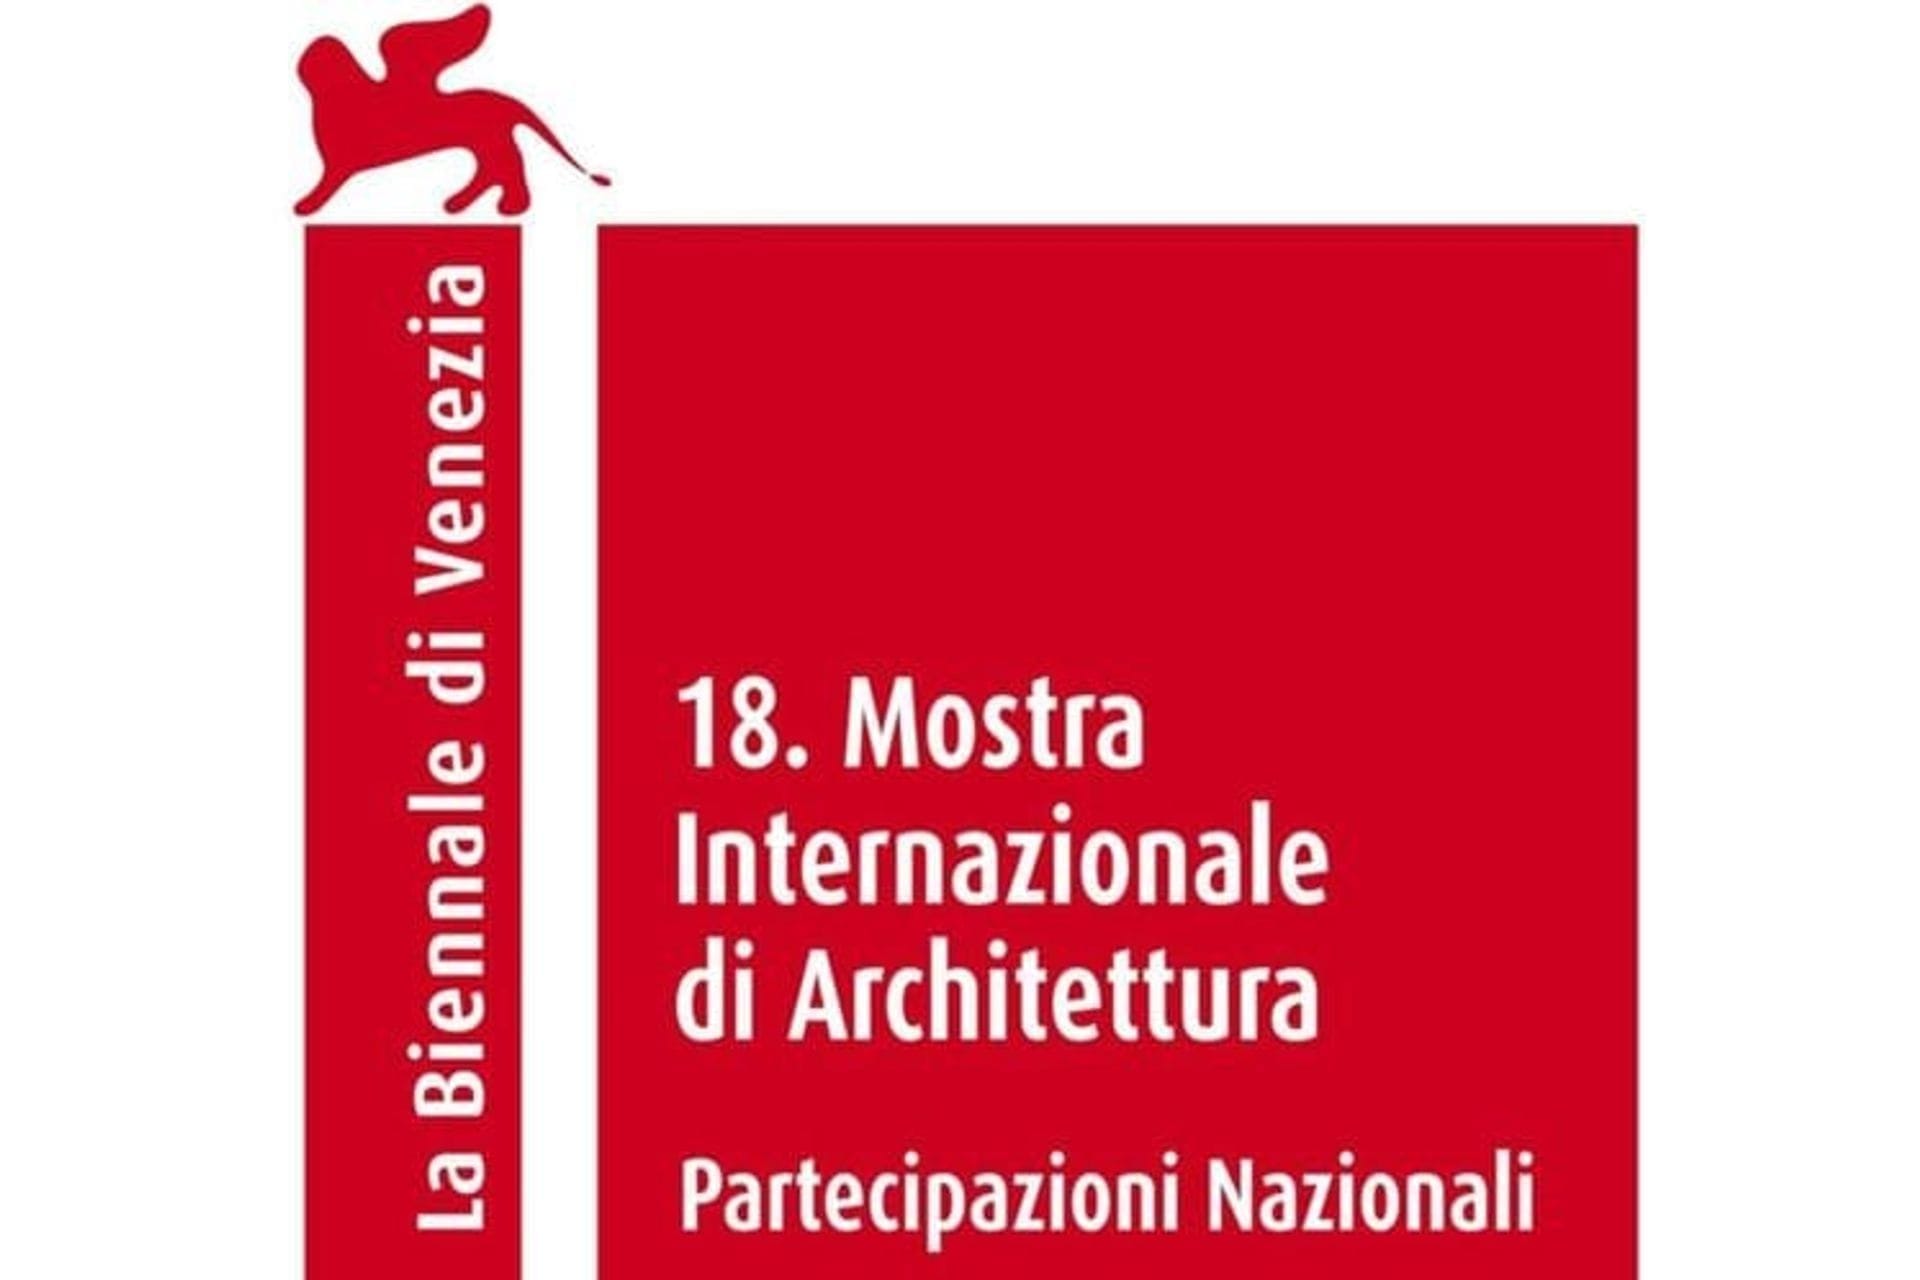 OBAVJEŠTENJE O REZULTATIMA Opšteg arhitektonskog konkursa za Nove ideje, koncepte i vizije za autorsko učešće u predstavljanju Crne Gore na XVIII Bijenalu arhitekture u Veneciji 2023